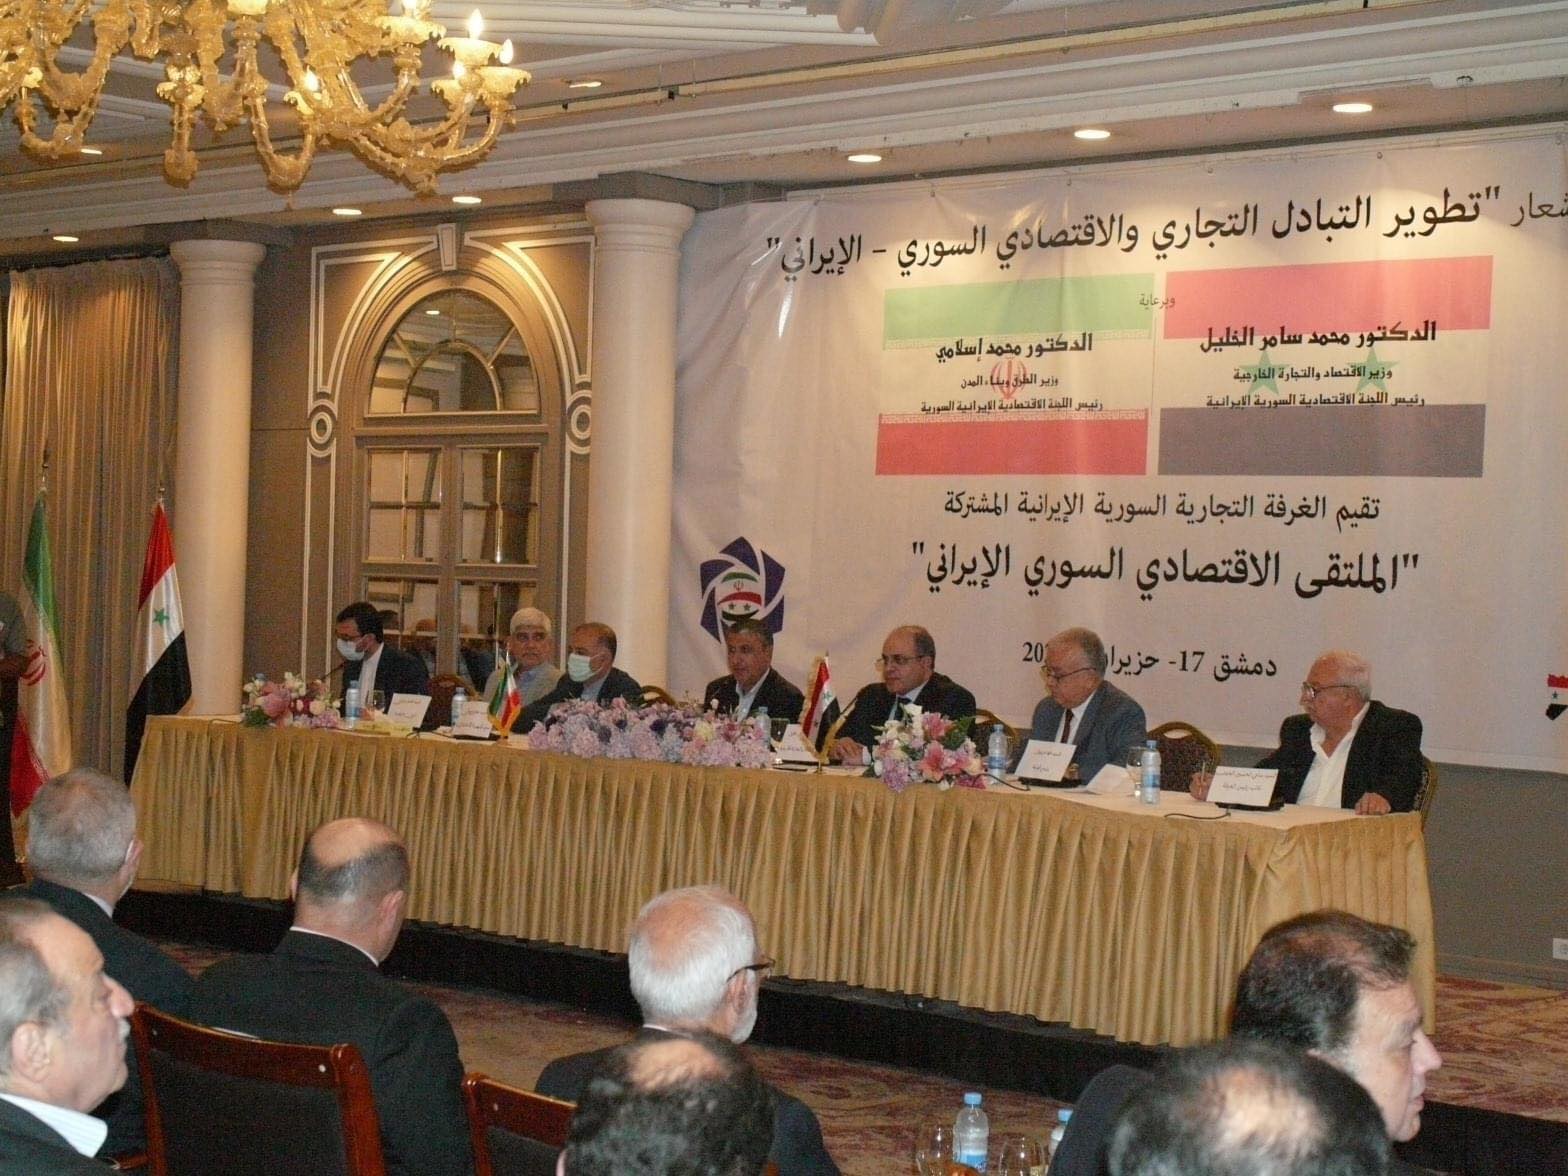 دام برس : ملتقى إقتصادي  سوري إيراني في دمشق لتطوير التبادل التجاري والاقتصادي بين البلدين